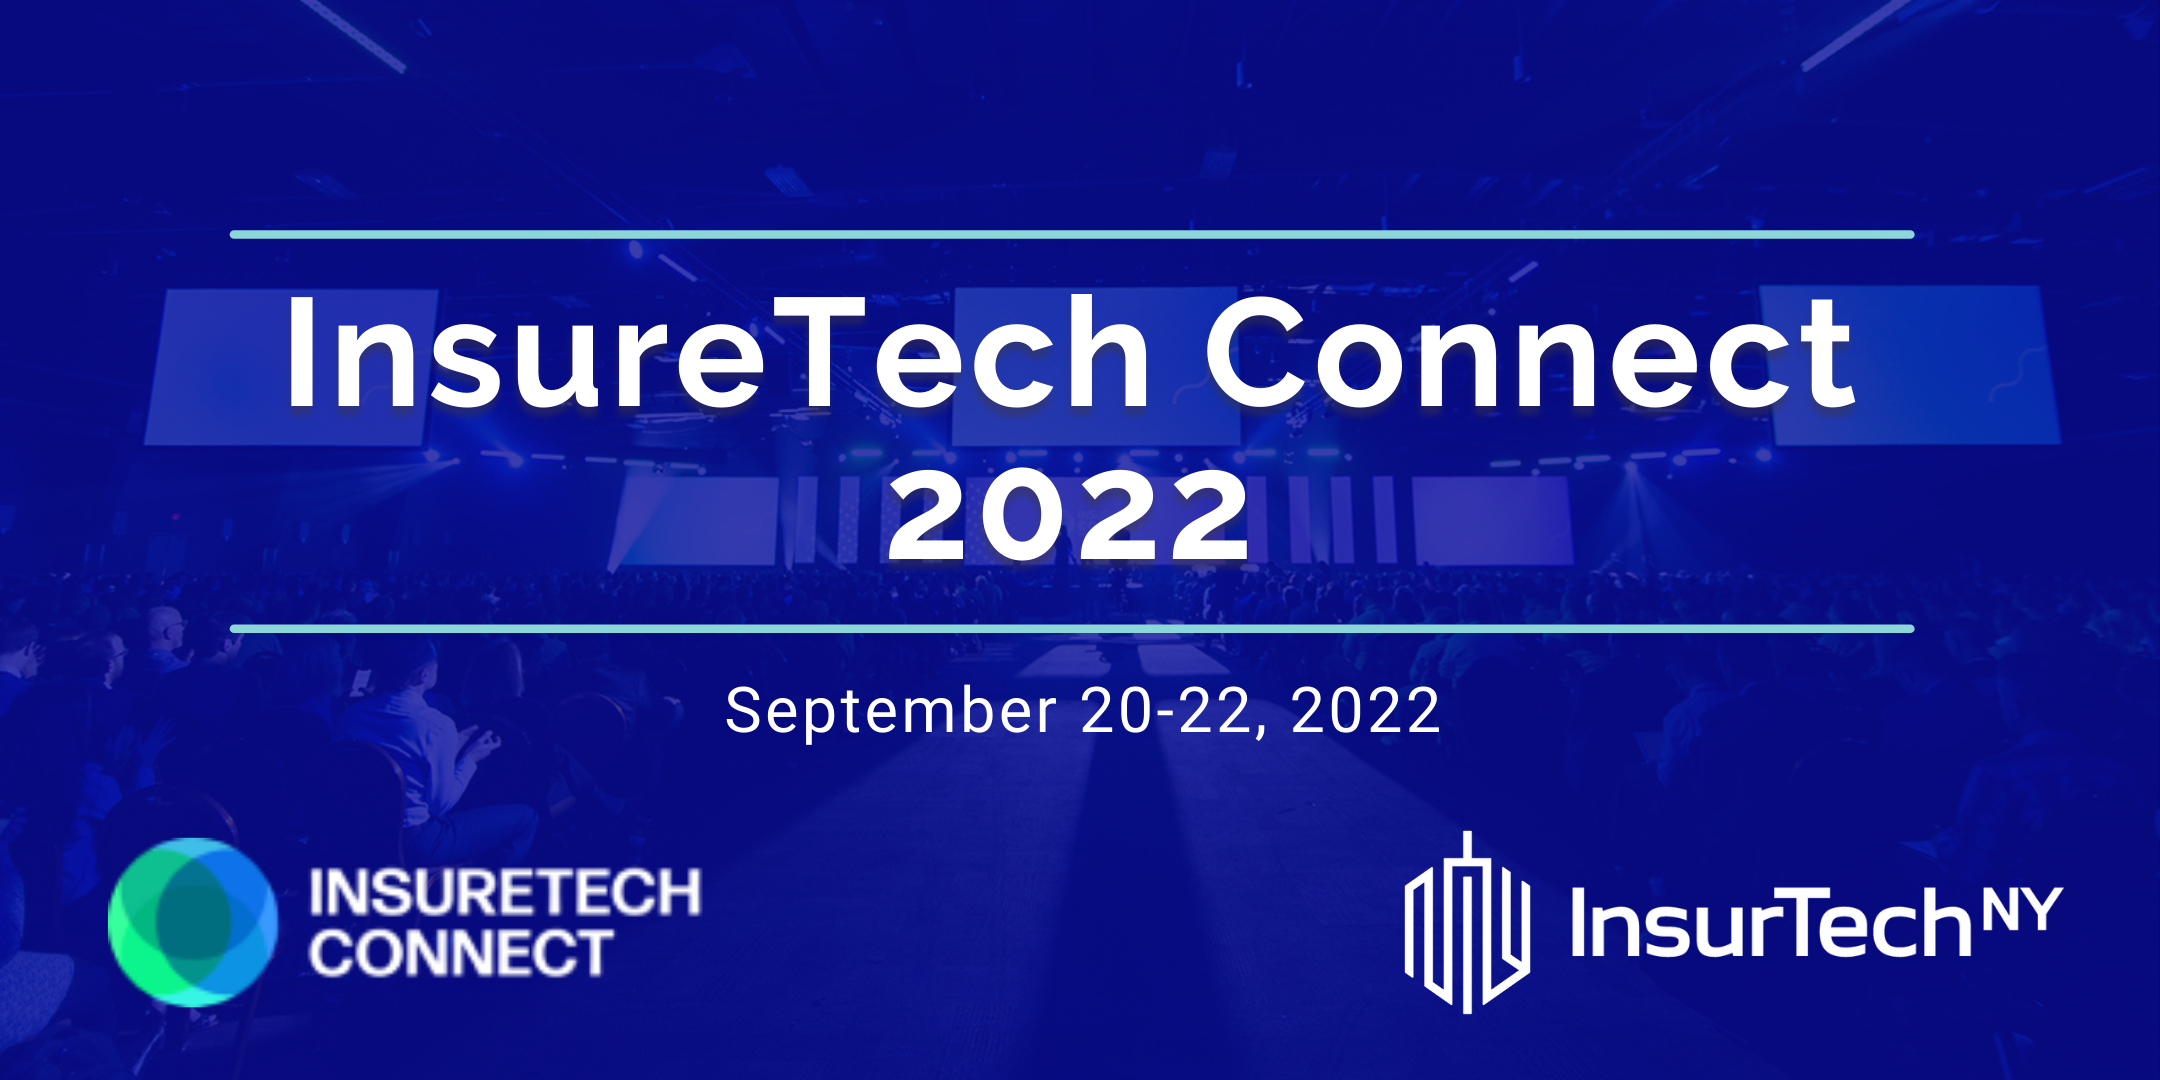 Insuretech Connect 2022